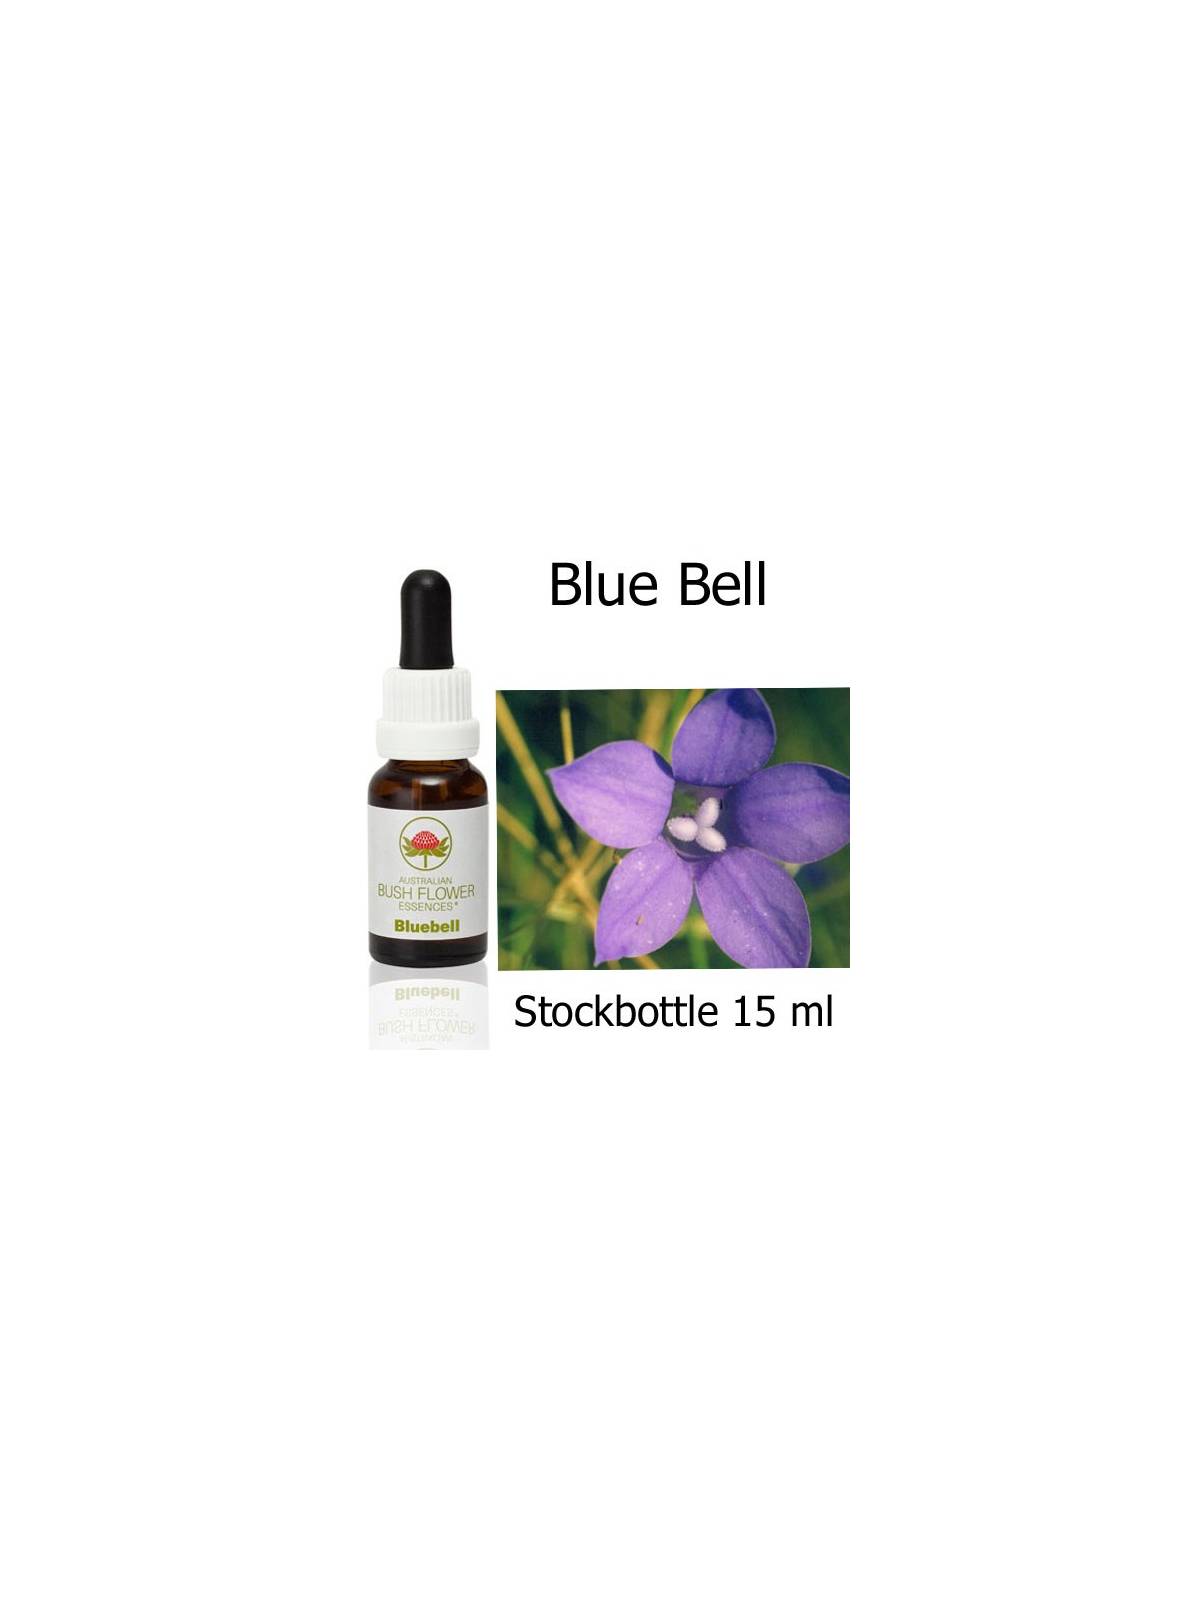 Bluebell Australian Bush Flower Essences